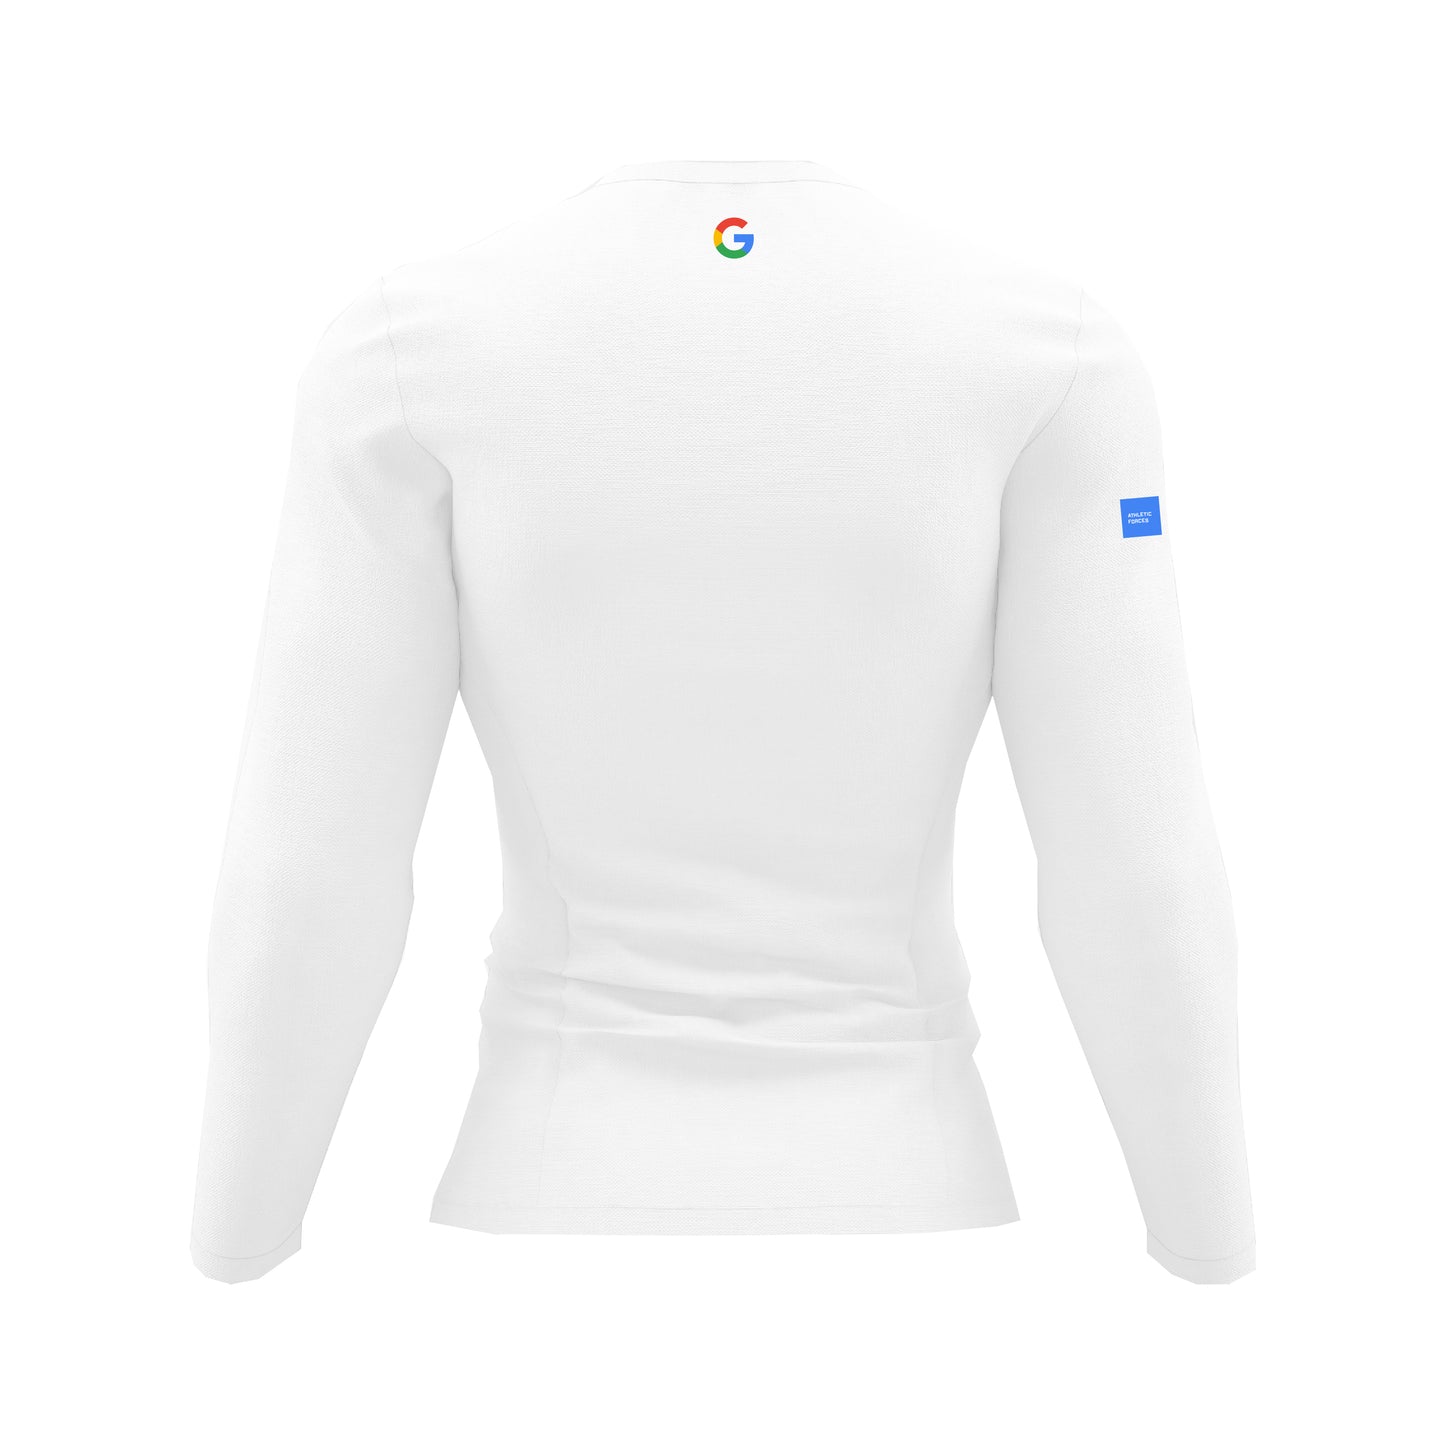 Google - Sweat Robot Force ® par Athletic Forces - Modèle 2